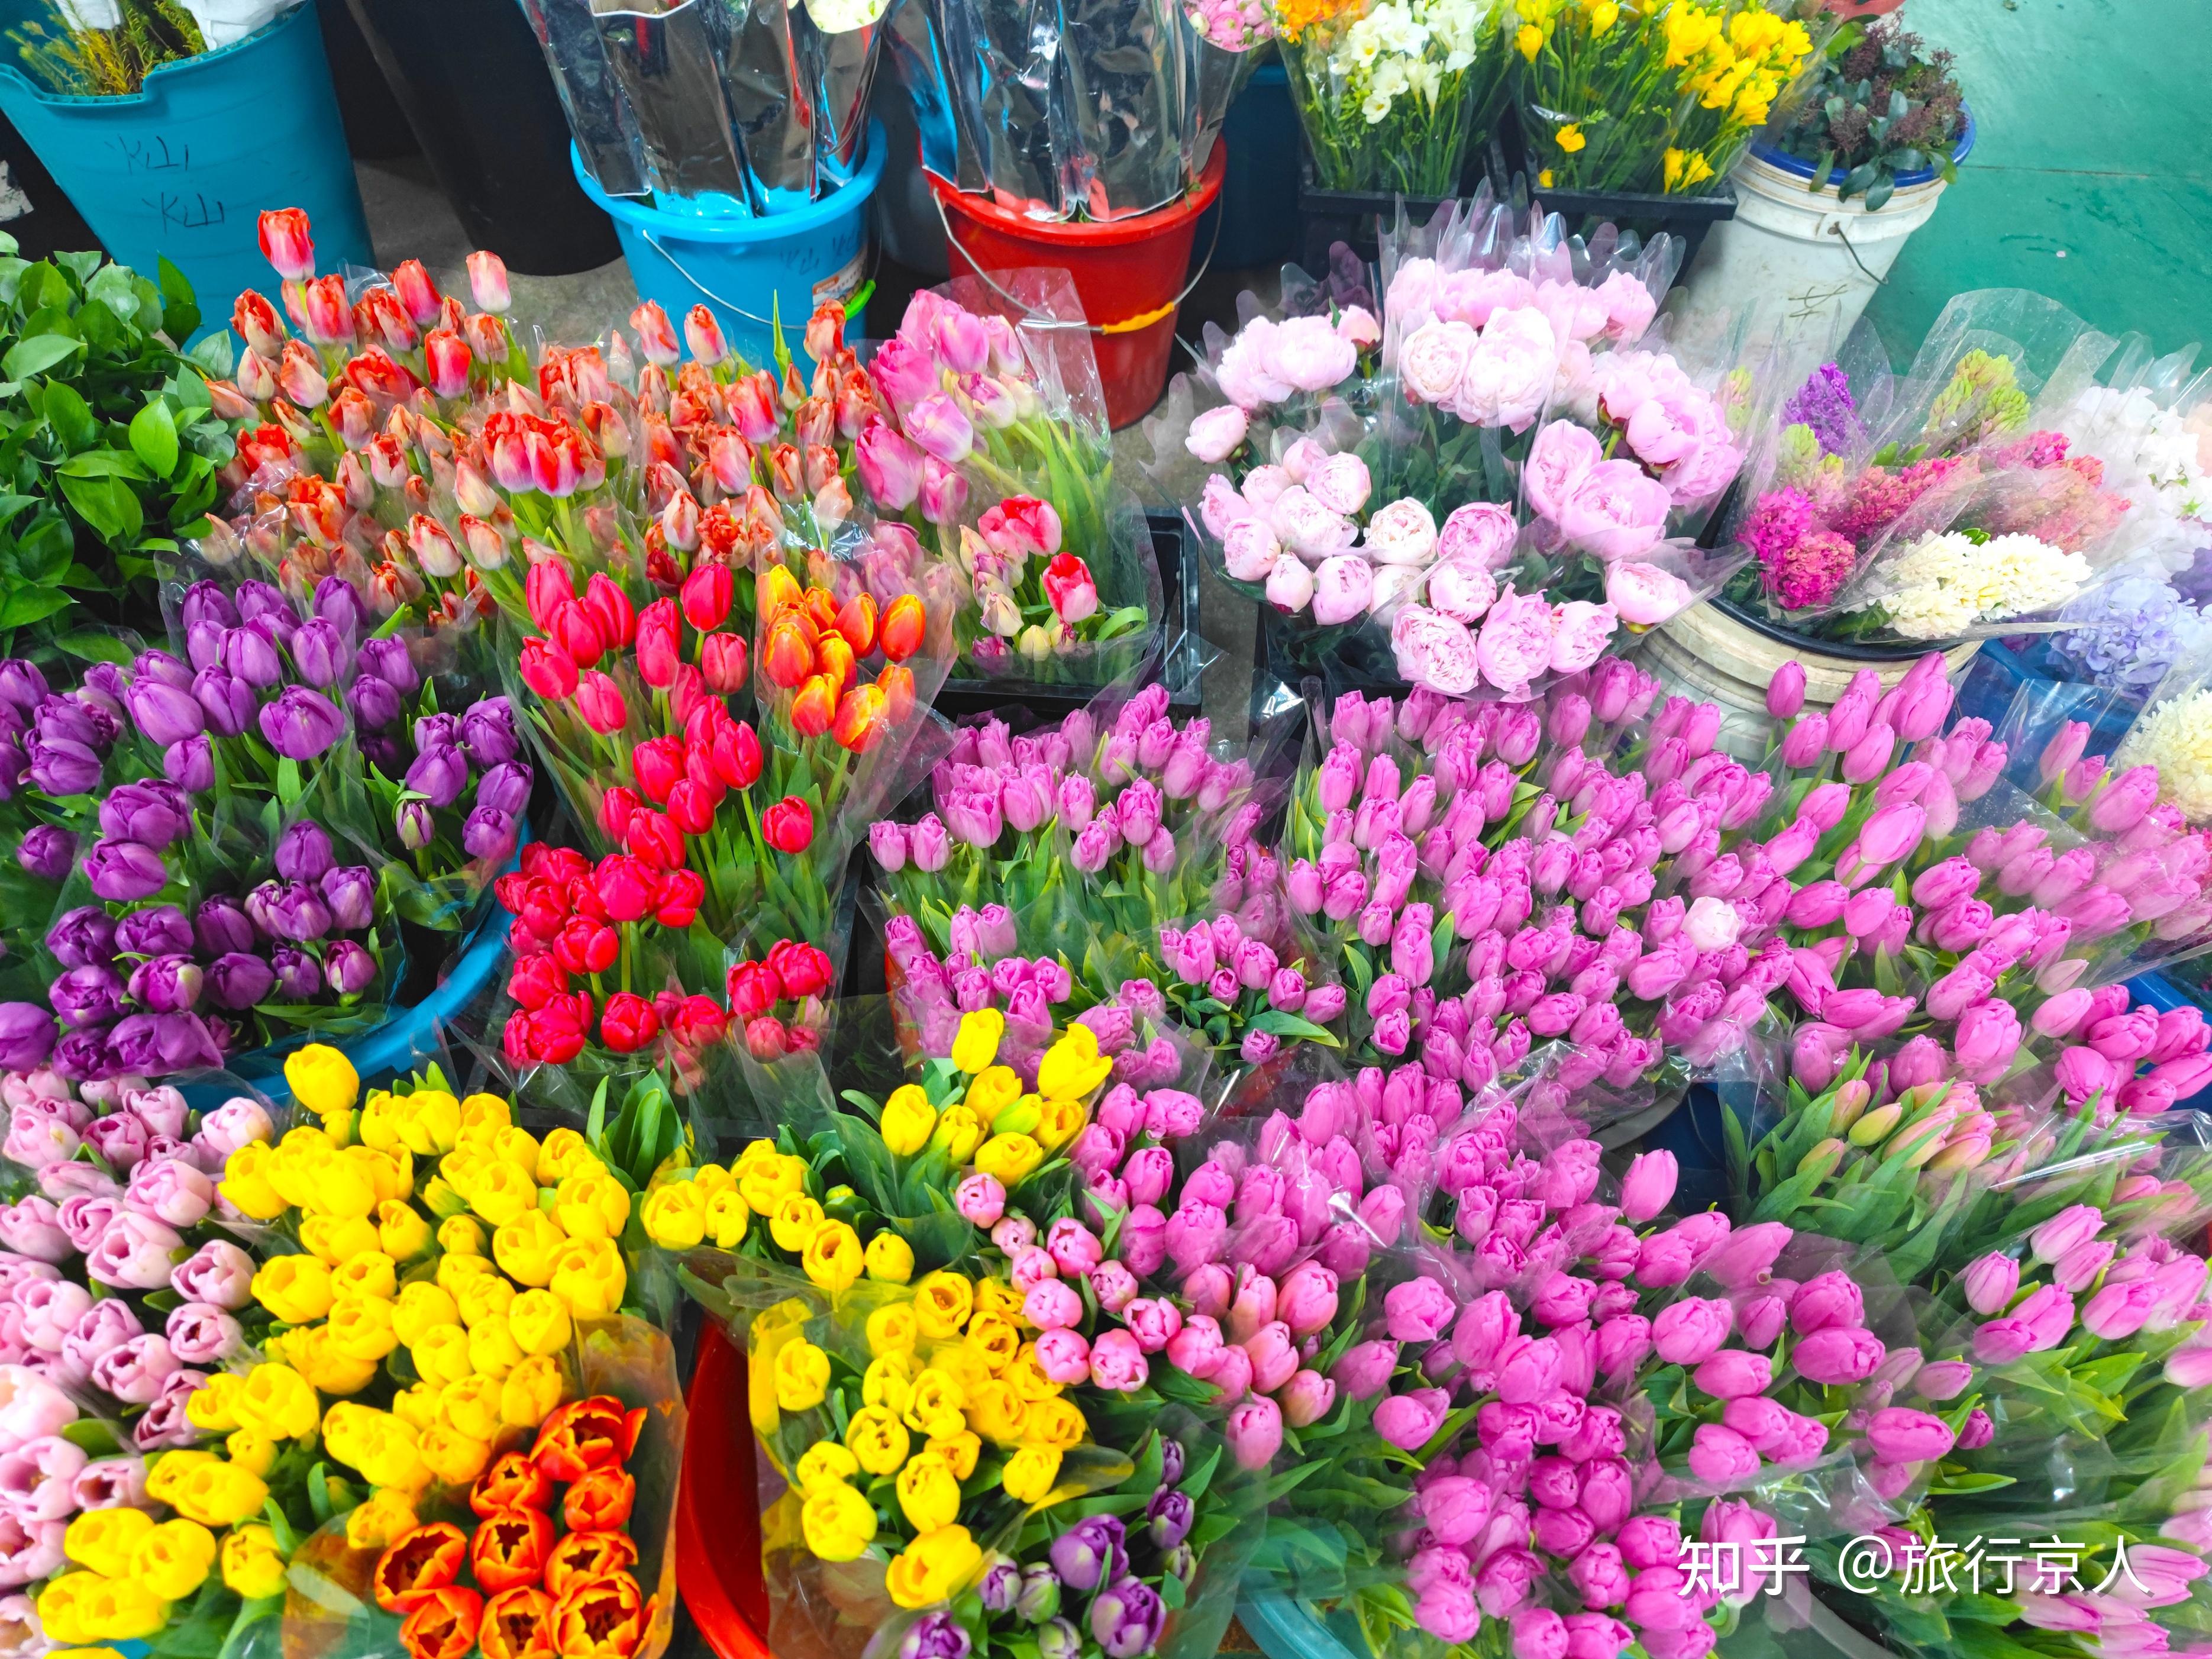 花卉市场图片浏览-花卉市场图片下载 - 酷吧图库